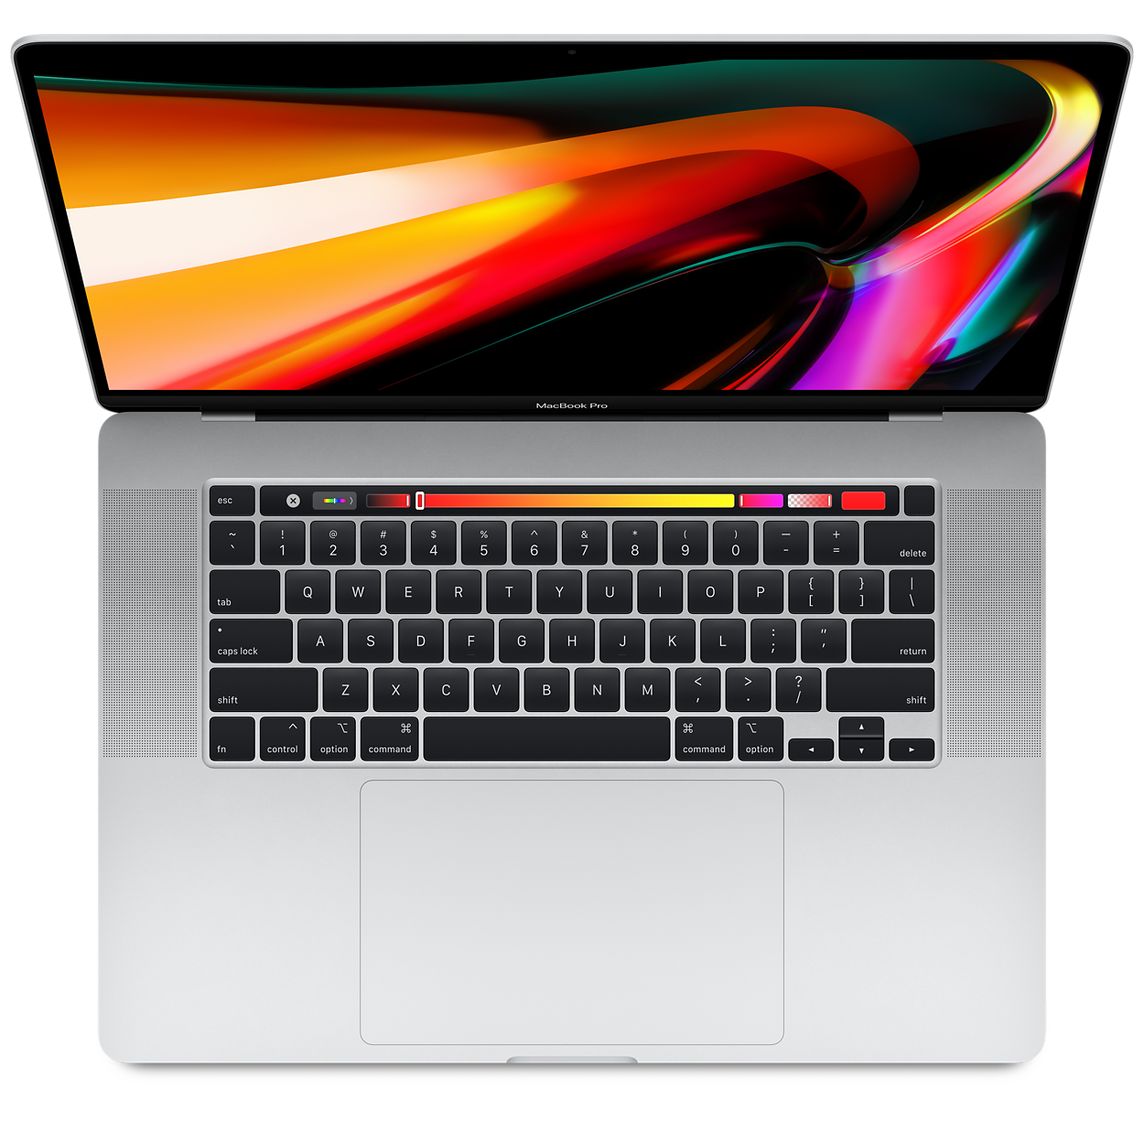 39,400円MacBook Pro 15インチ 本体 2018 Core i9 1TB